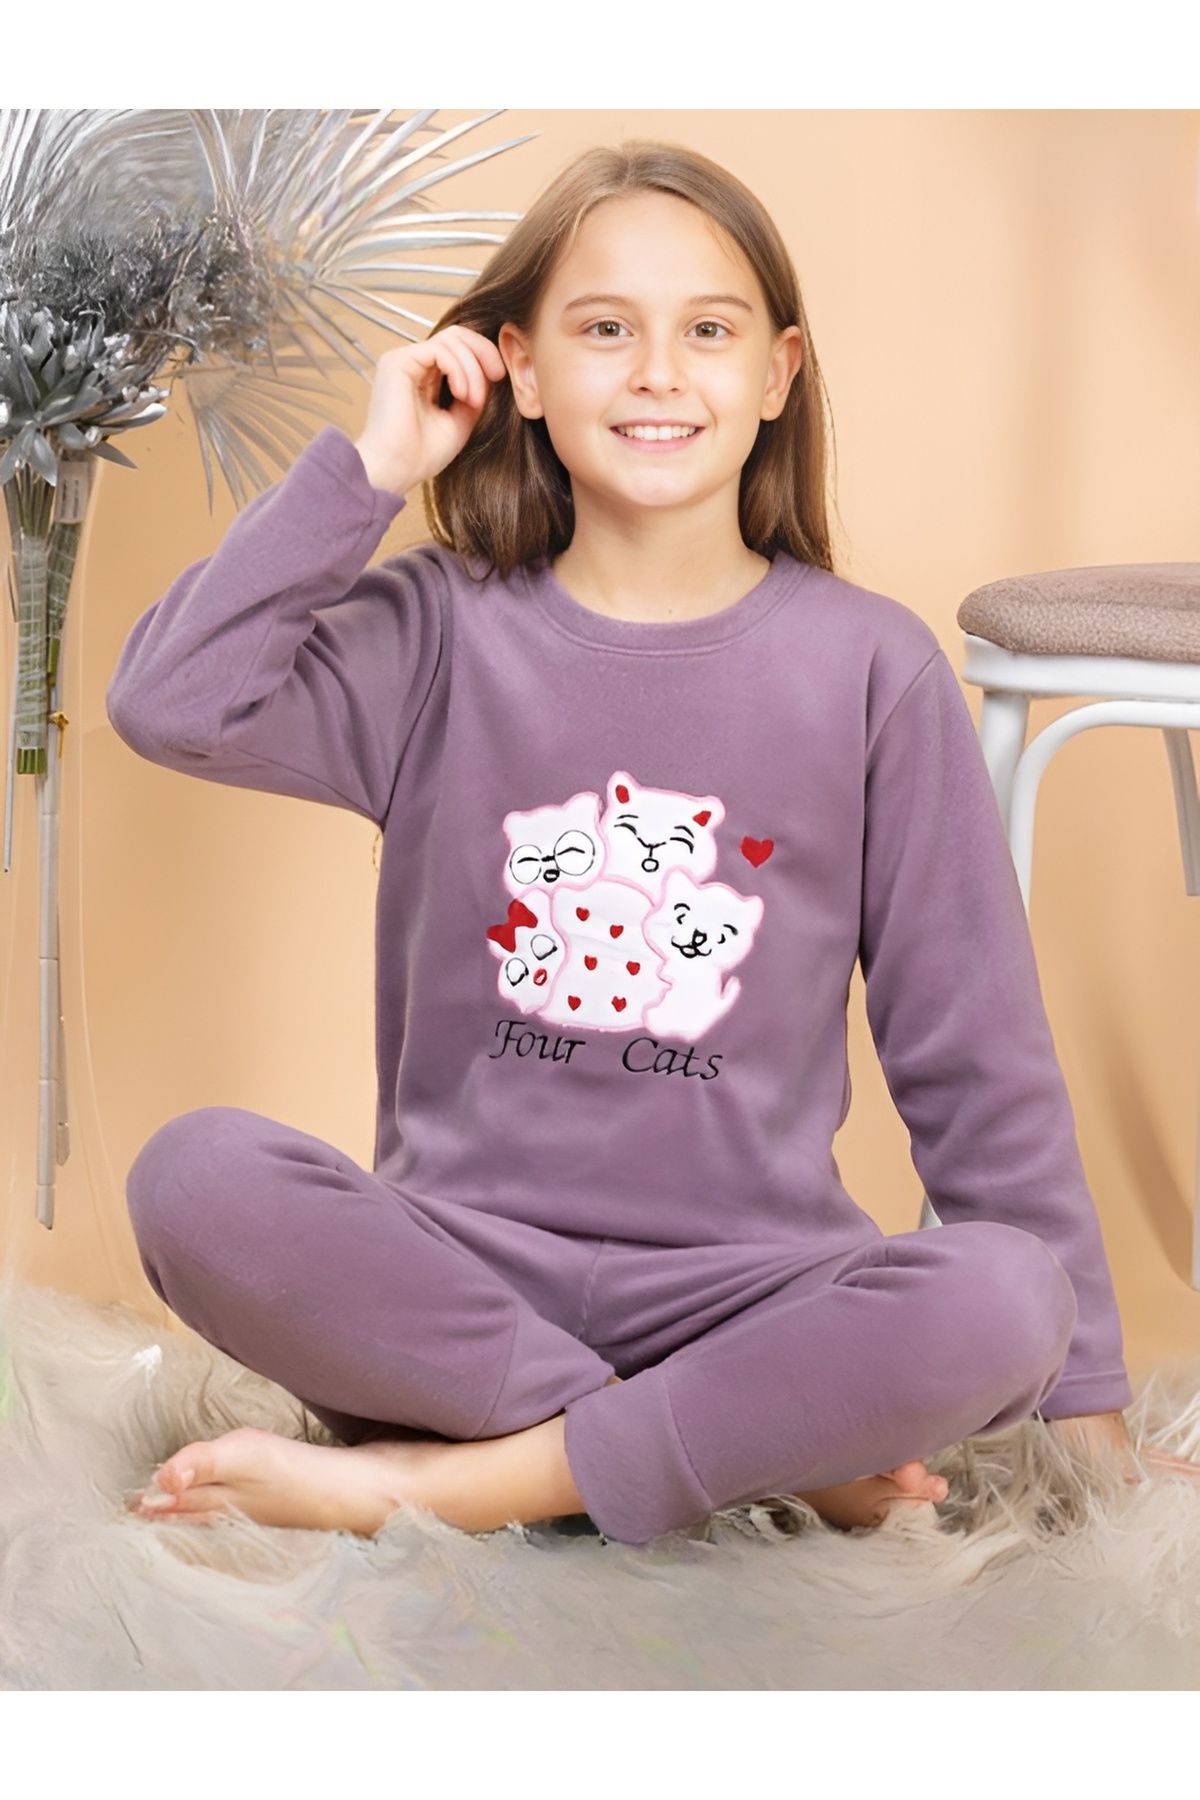 Pyjama Familya Kız Çocuk Figürlü Polar Pijama Takımı